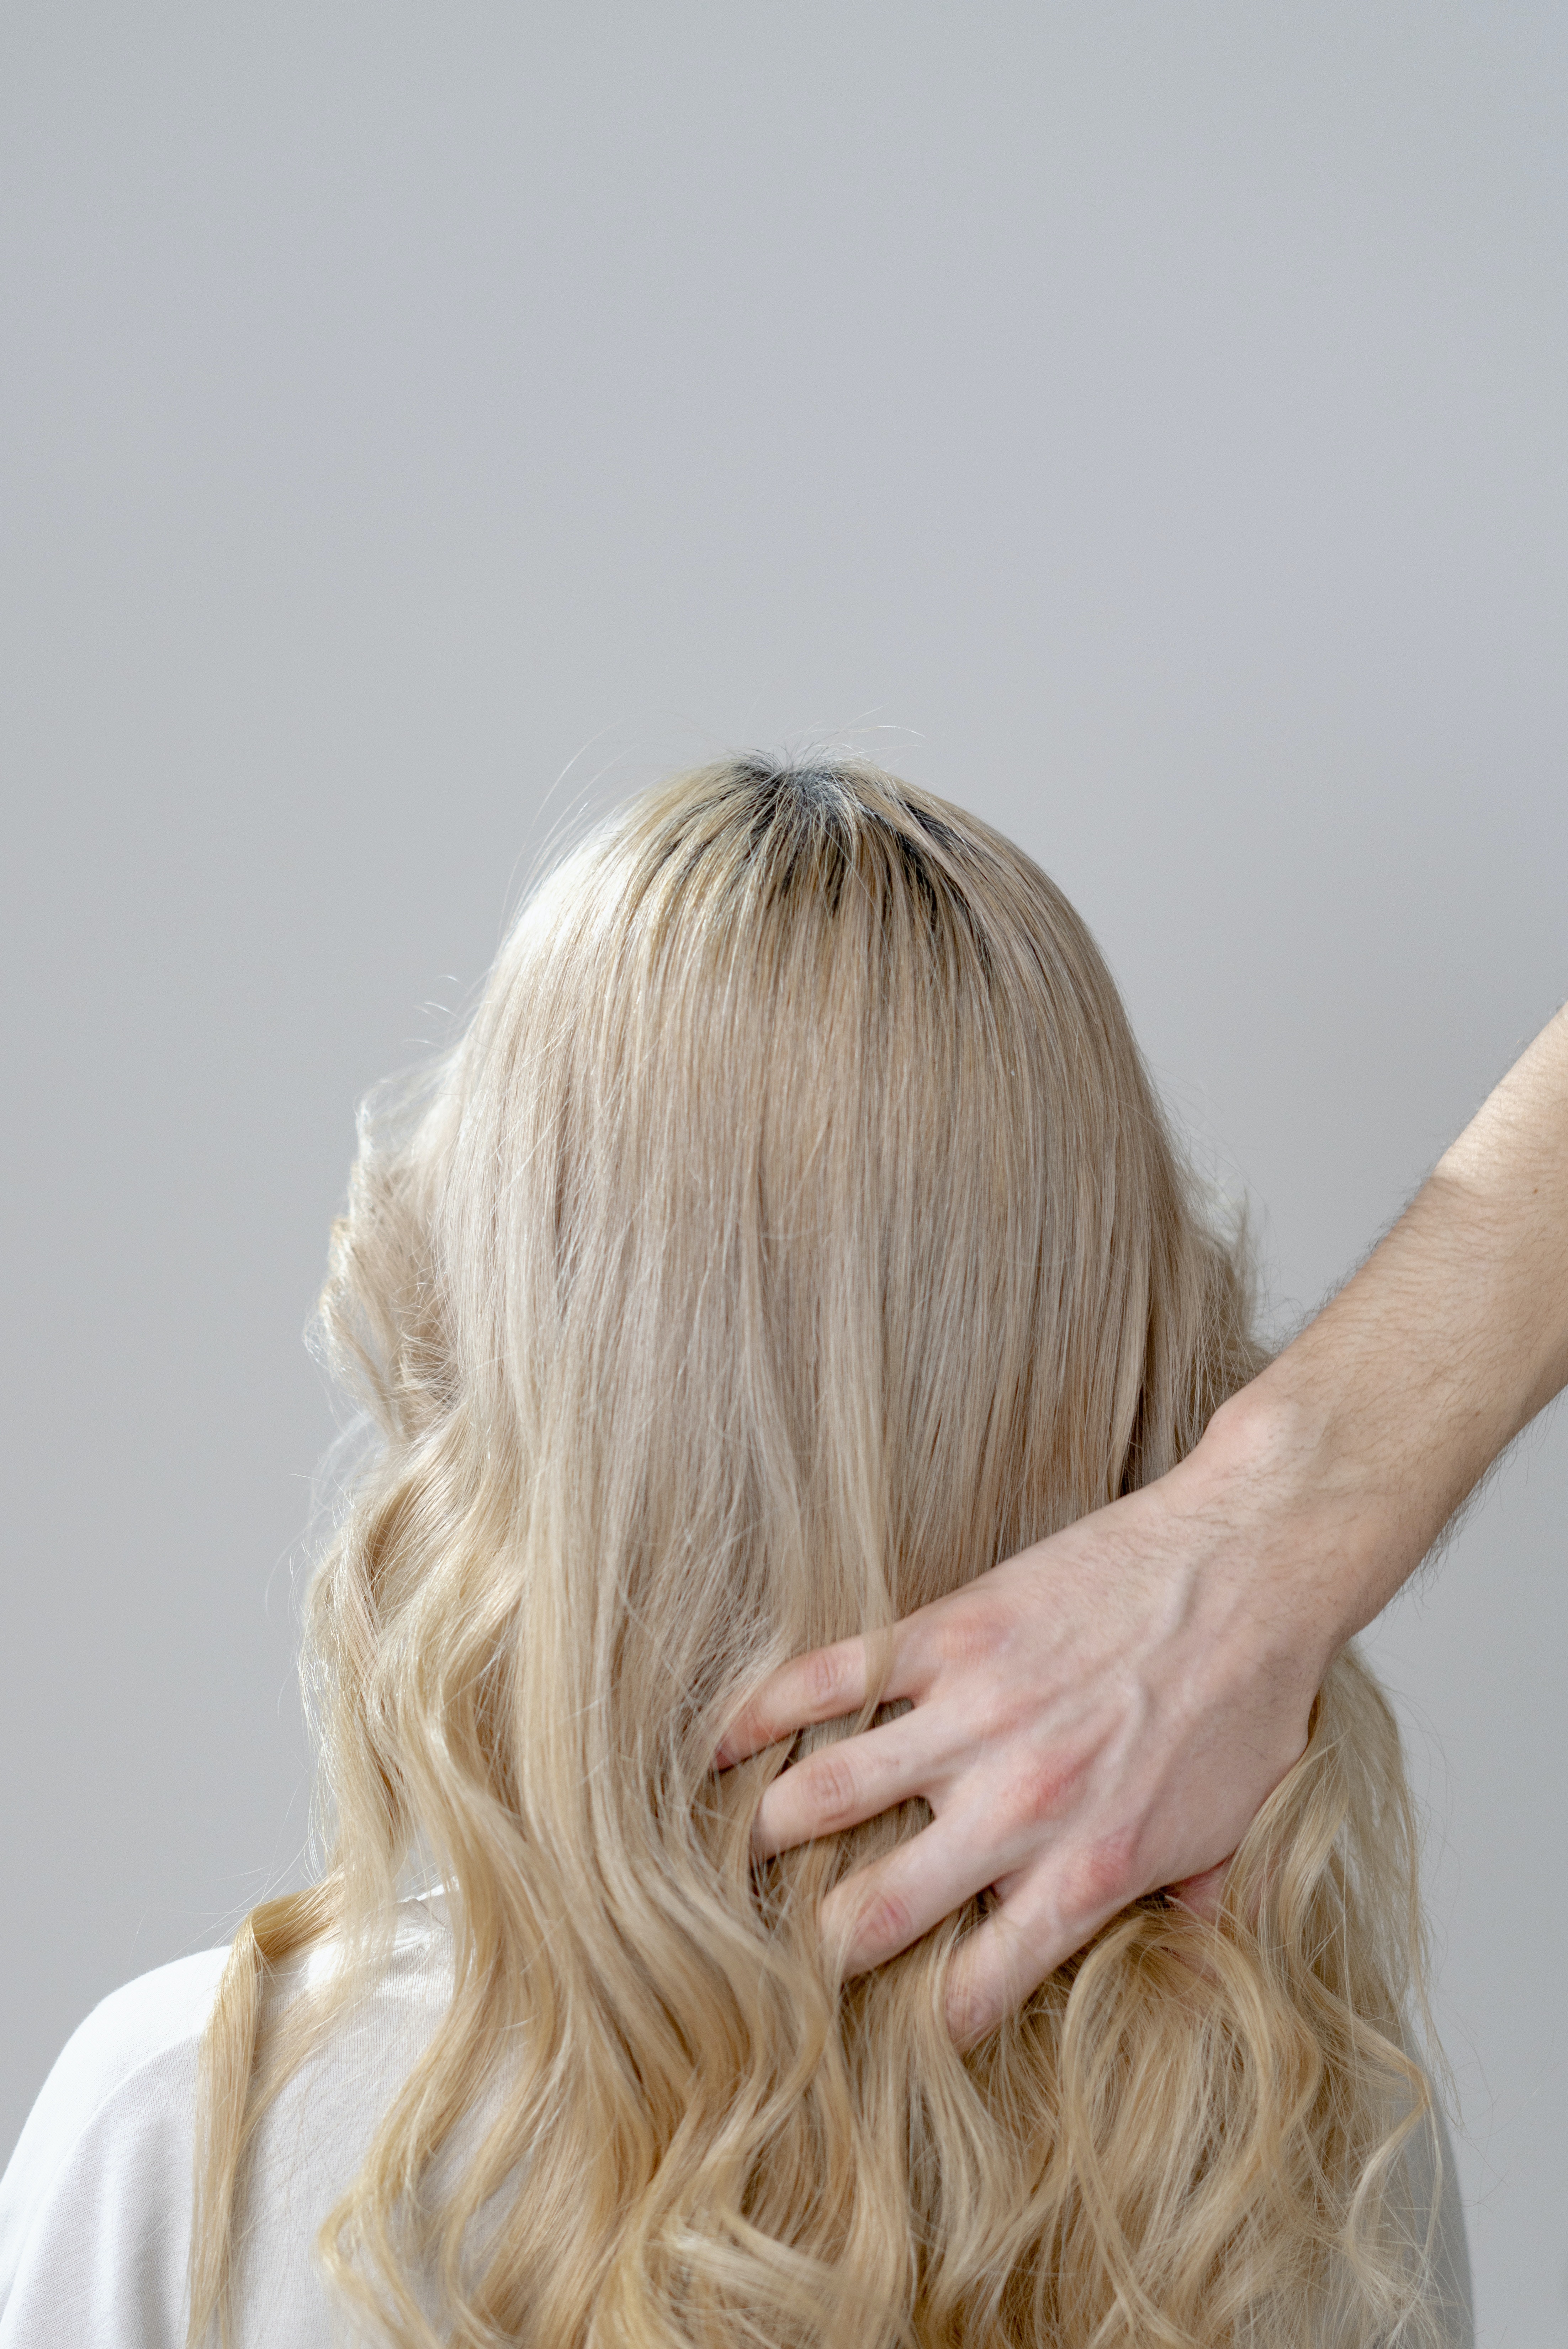 6 λάθη που πρέπει να αποφεύγεις όταν βάφεις τα μαλλιά σου στο σπίτι